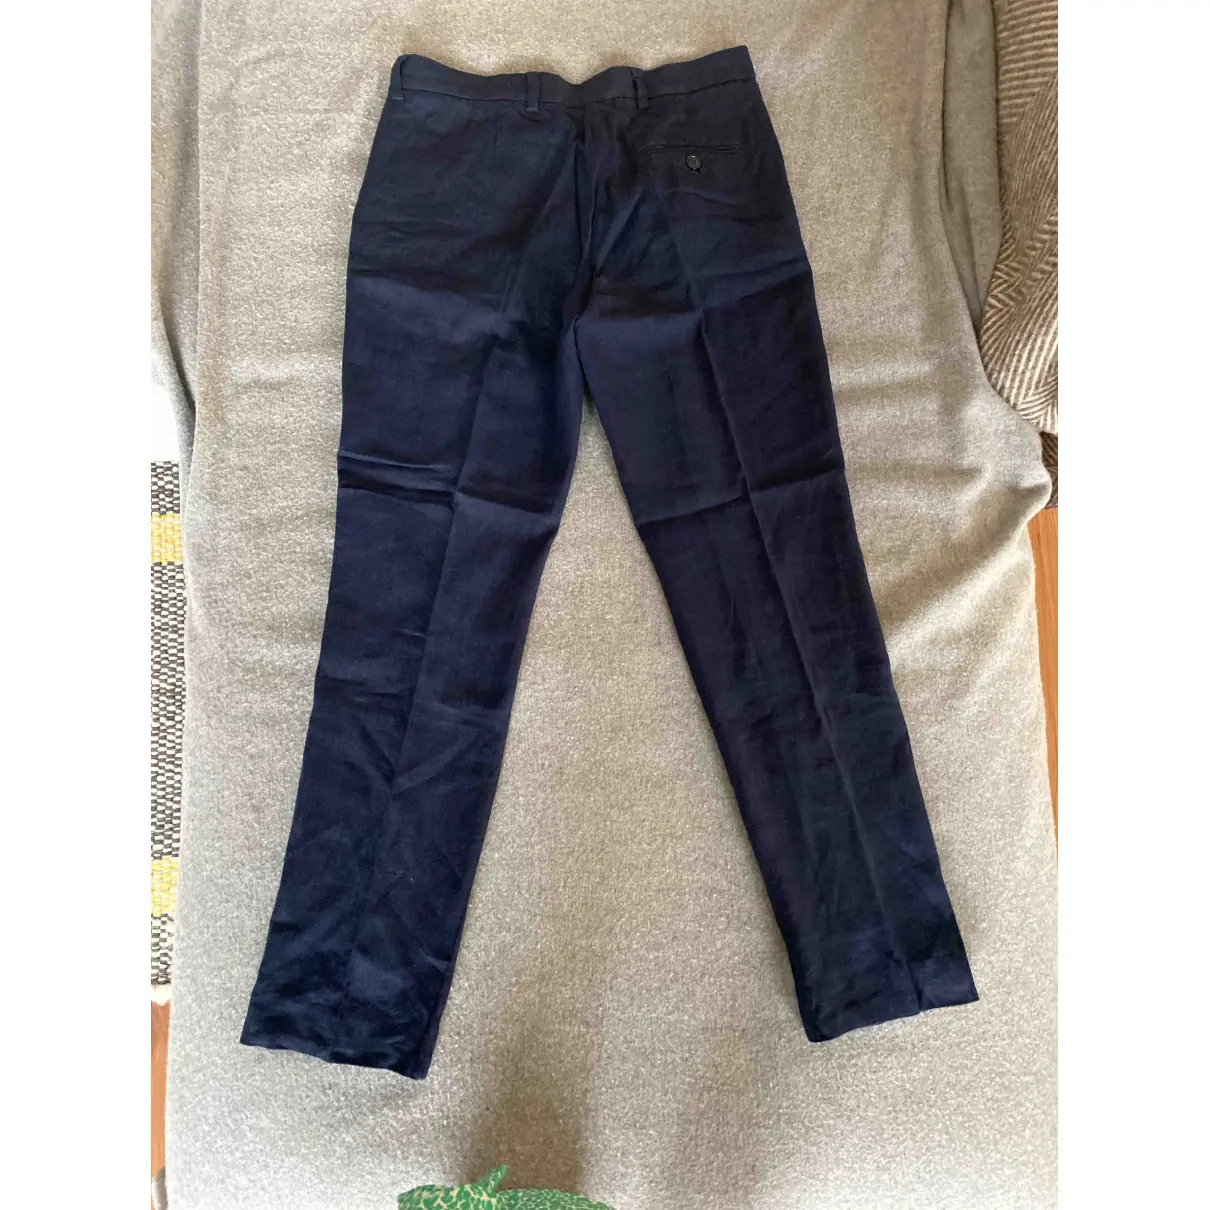 Buy Nicole Farhi Linen trousers online